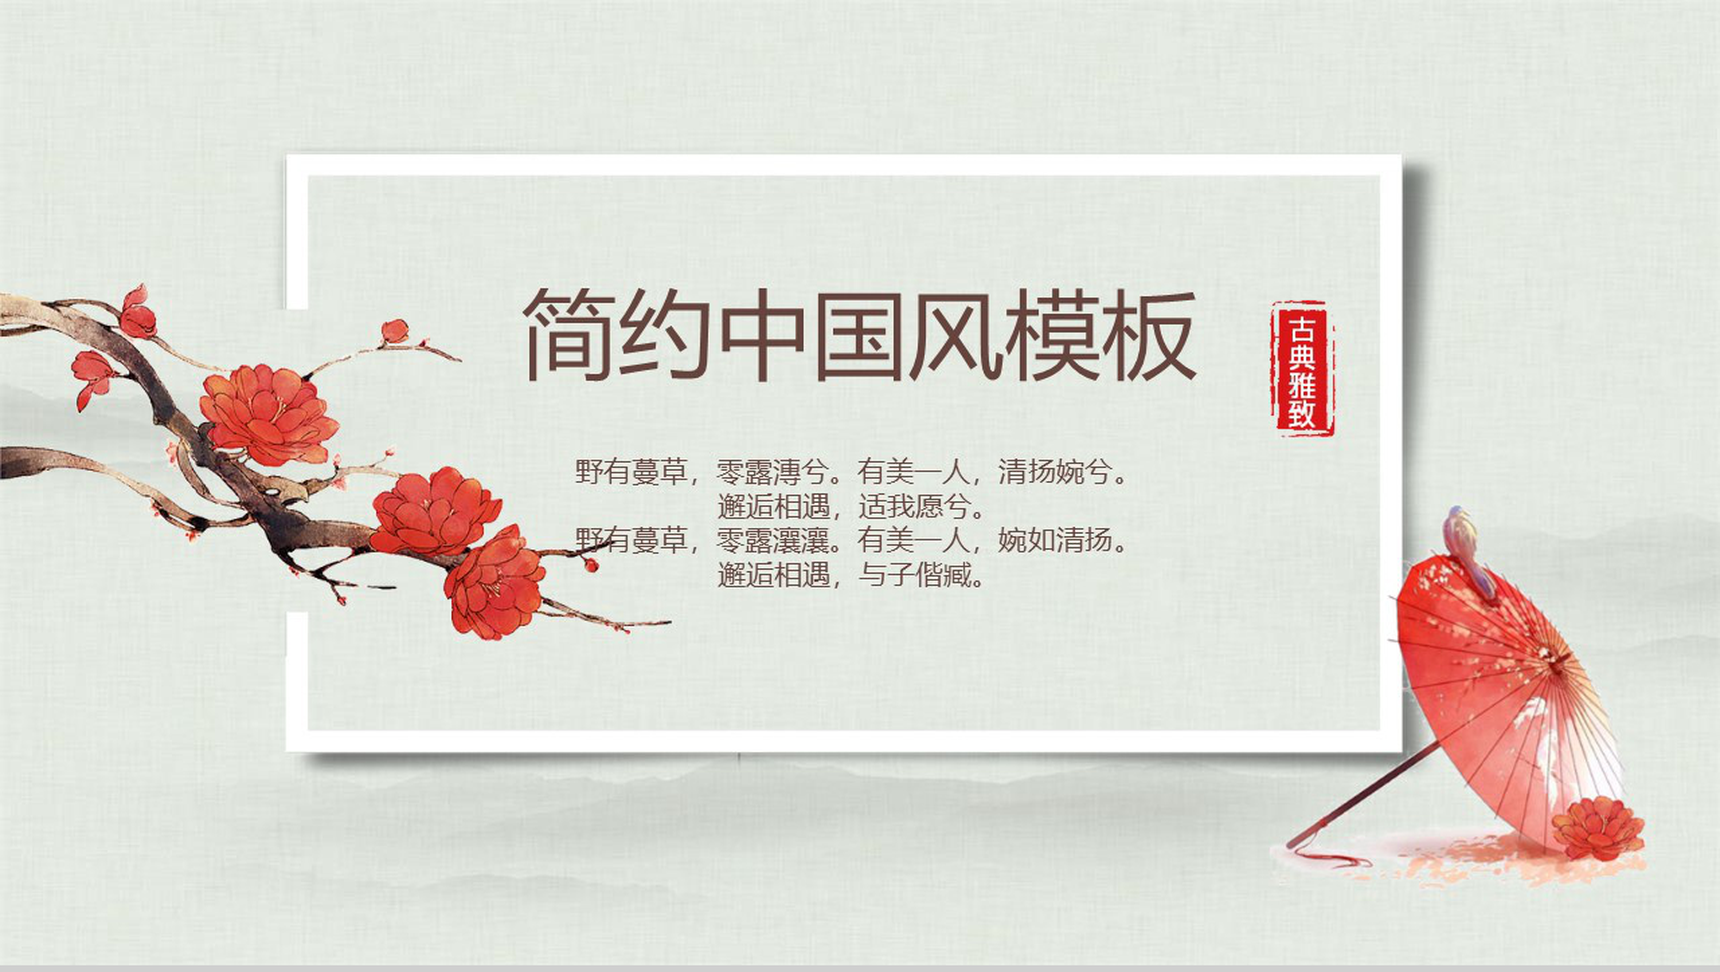 中国传统文化宫廷风传统文化PPT模板-1